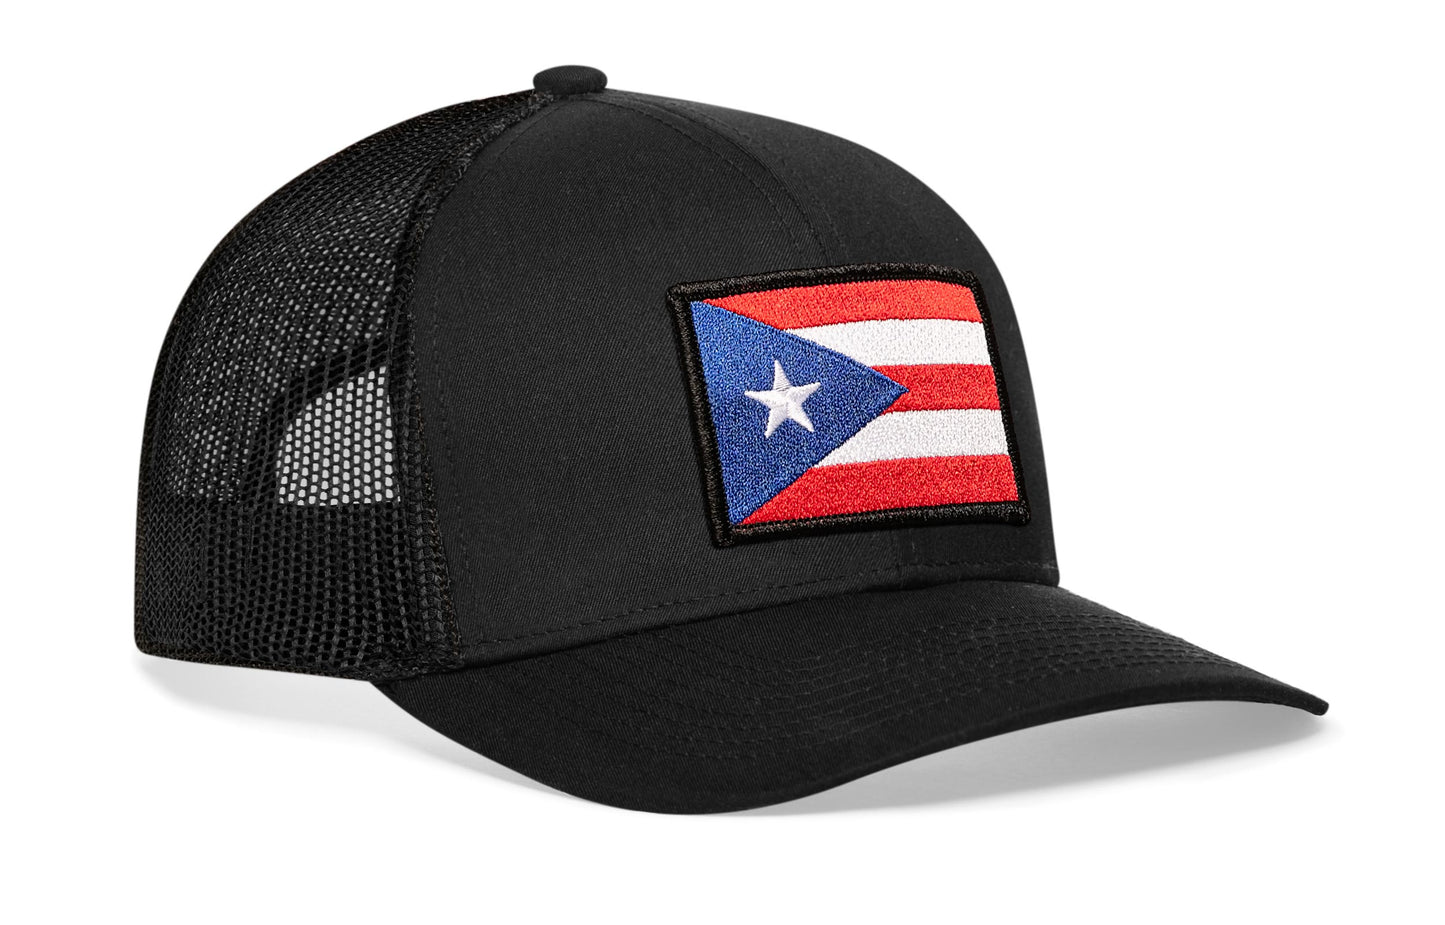 Puerto Rico Flag Trucker Hat  |  Black Puerto Rican Snapback